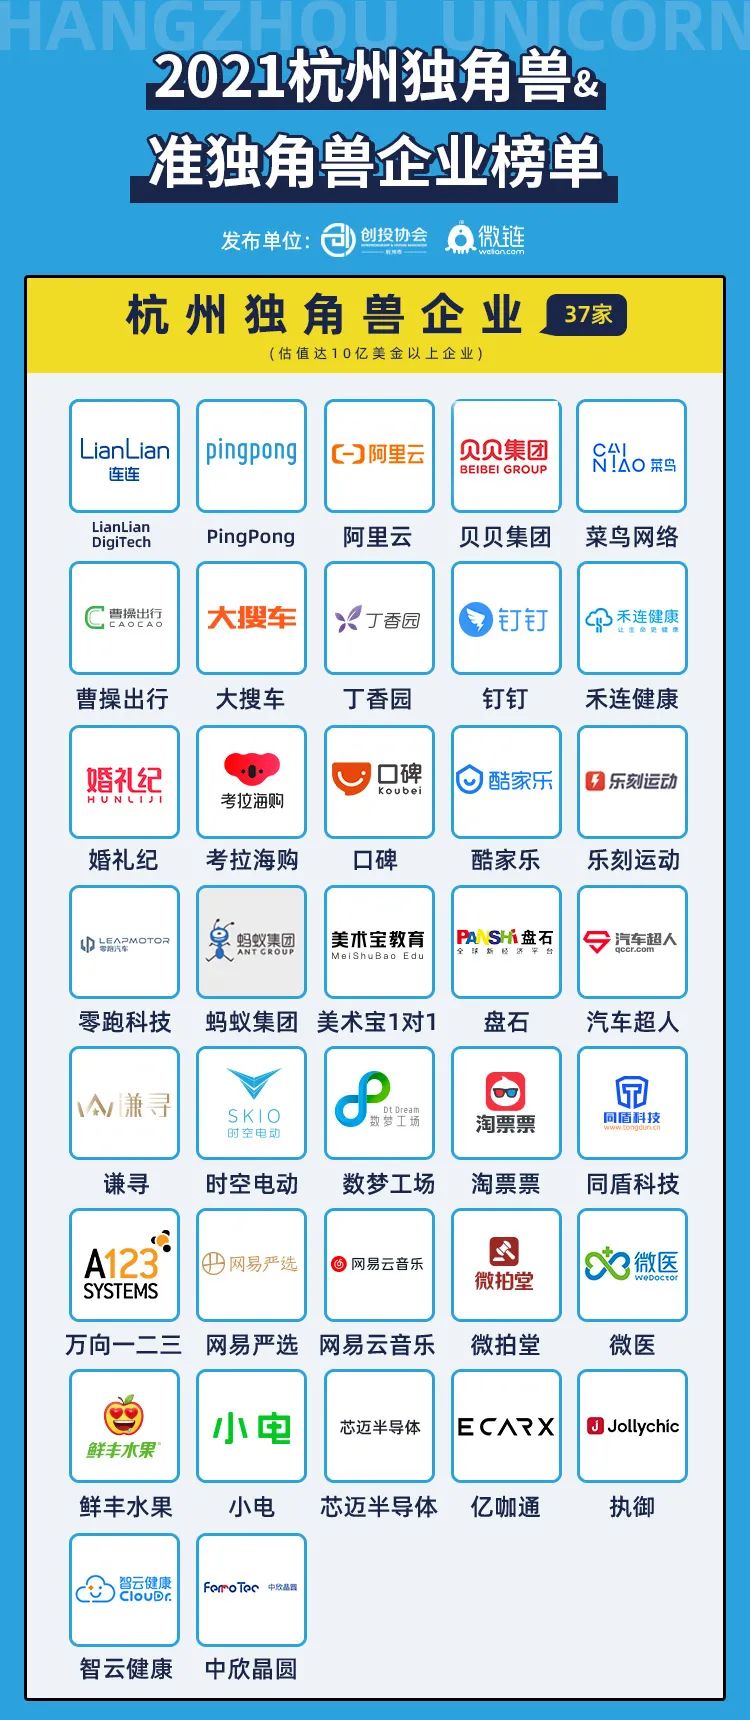 凡闻科技再次入选杭州人工智能领域准独角兽企业榜单